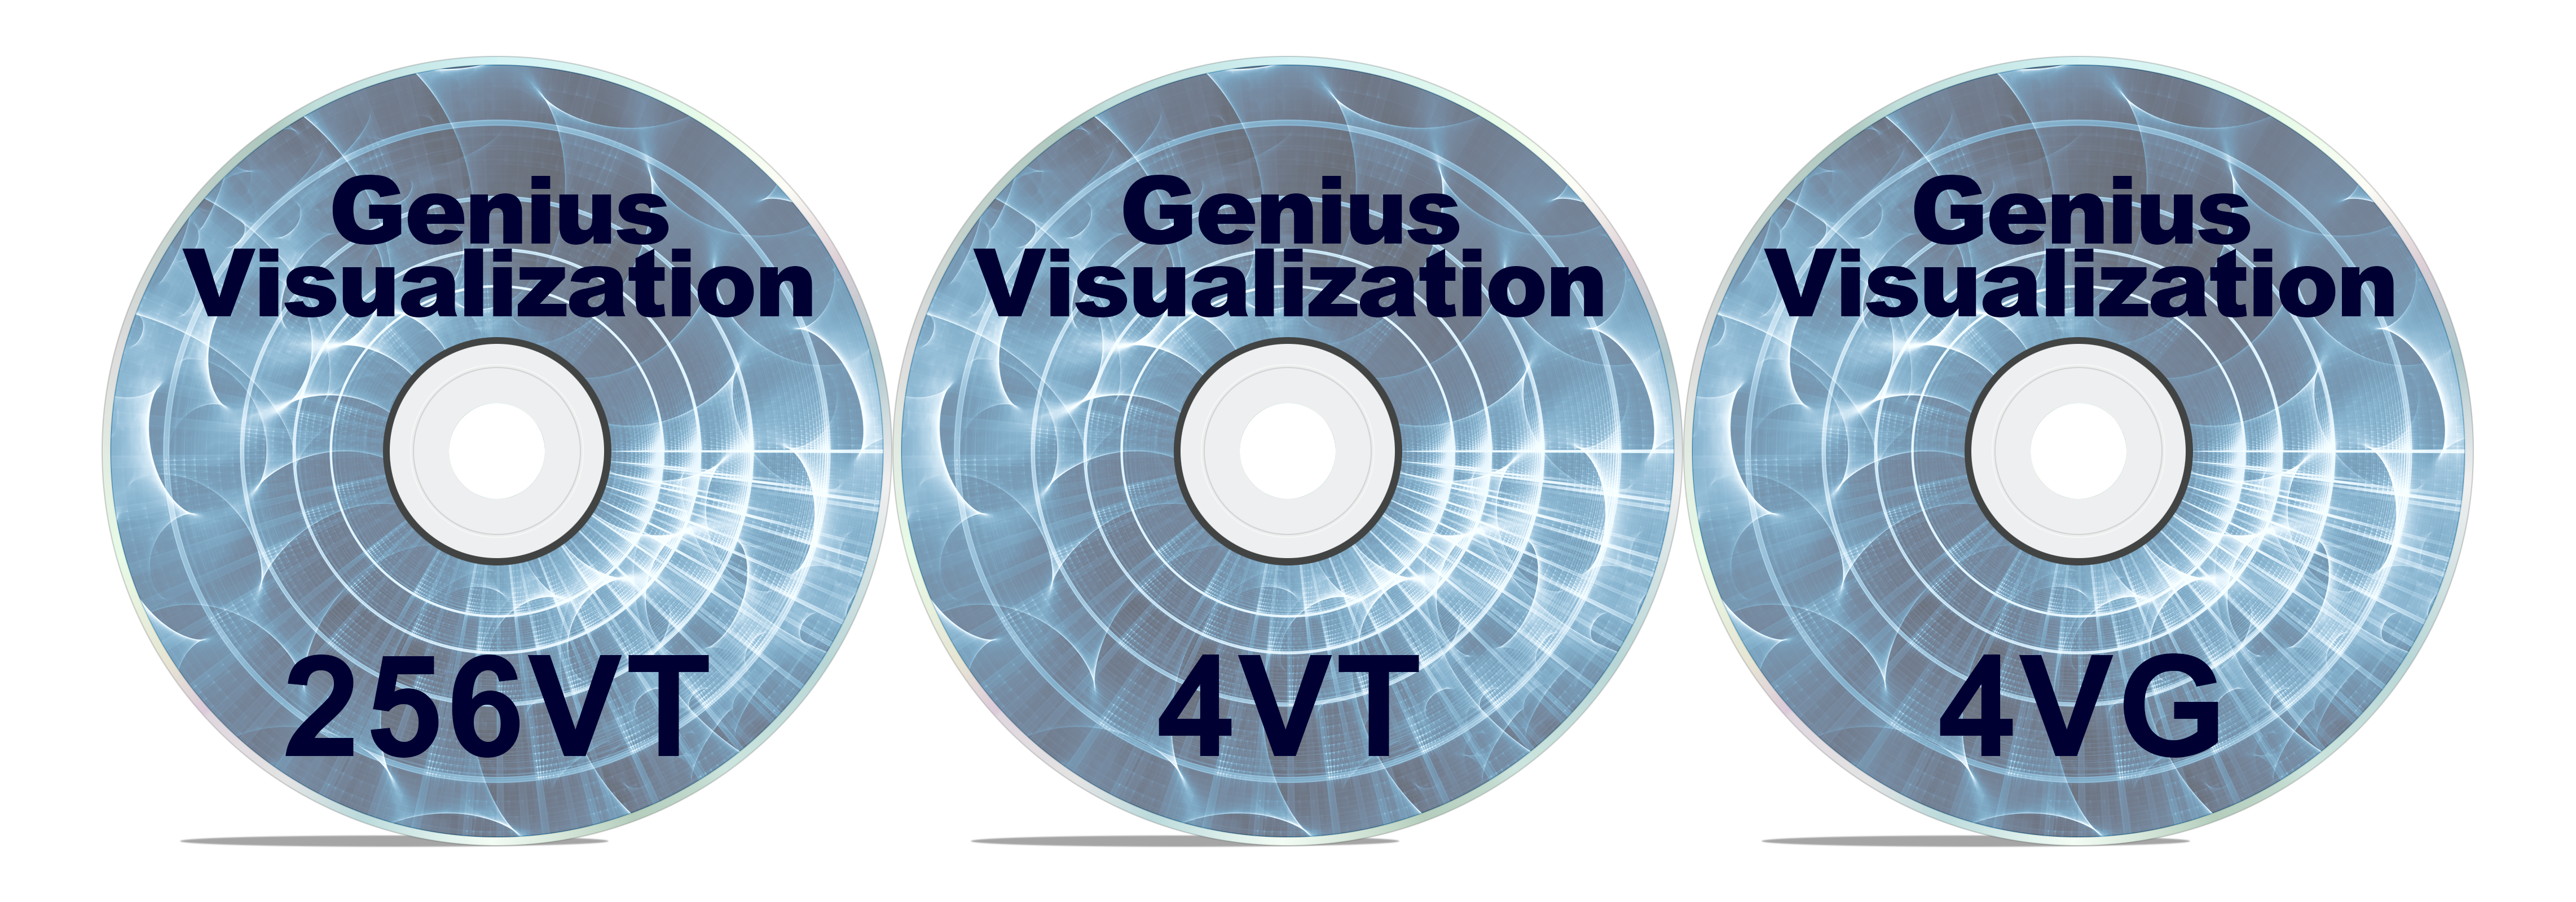 Genius Visualization